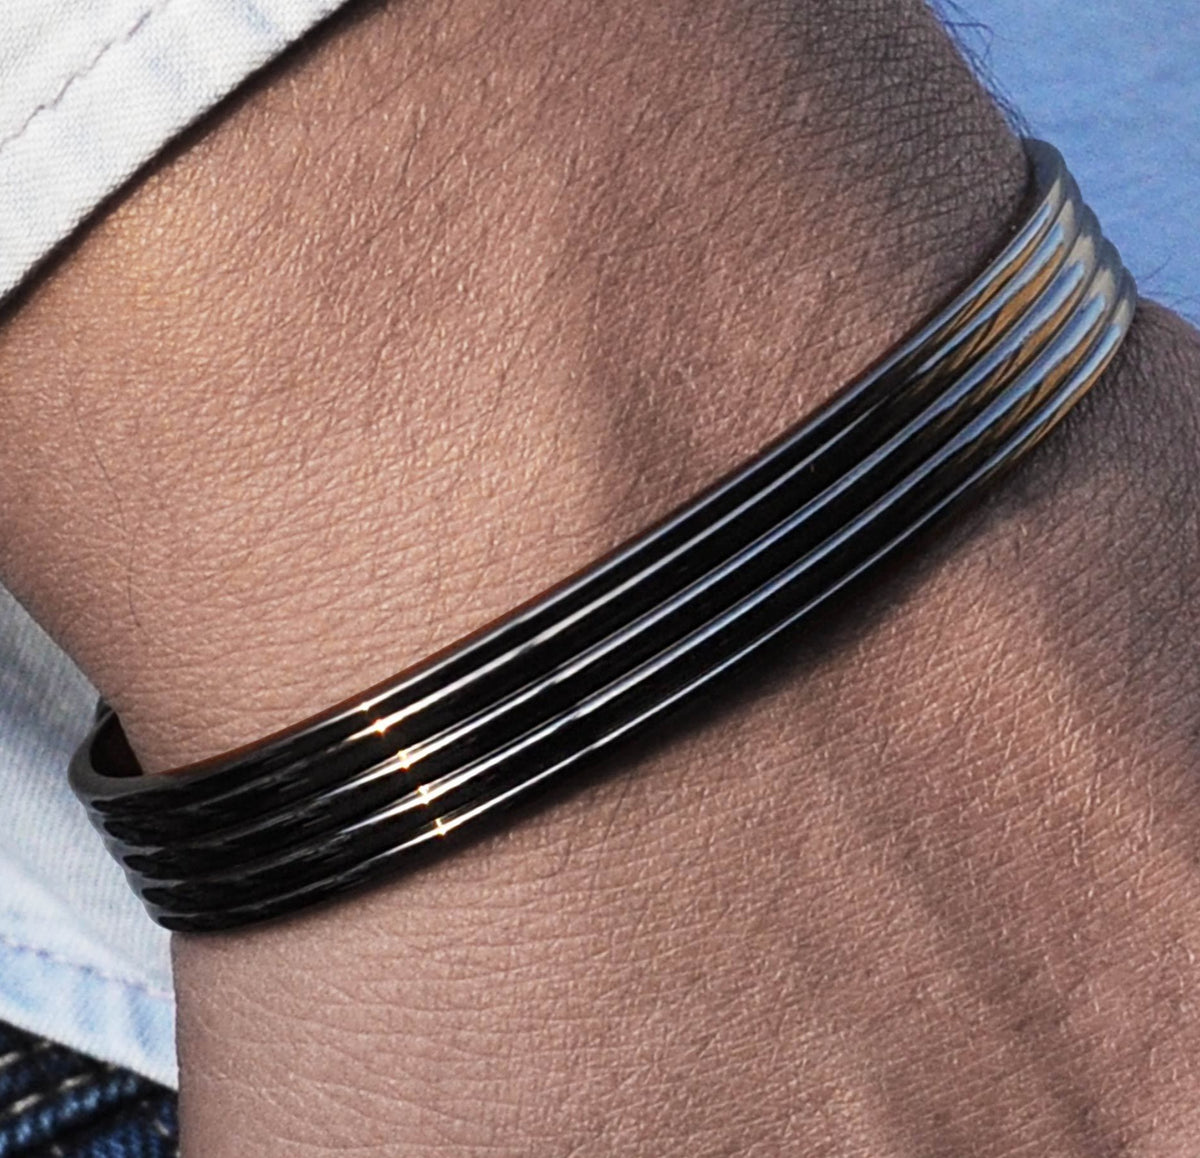 The Best Men's Bracelets: 16 Options for Guys - The Modest Man